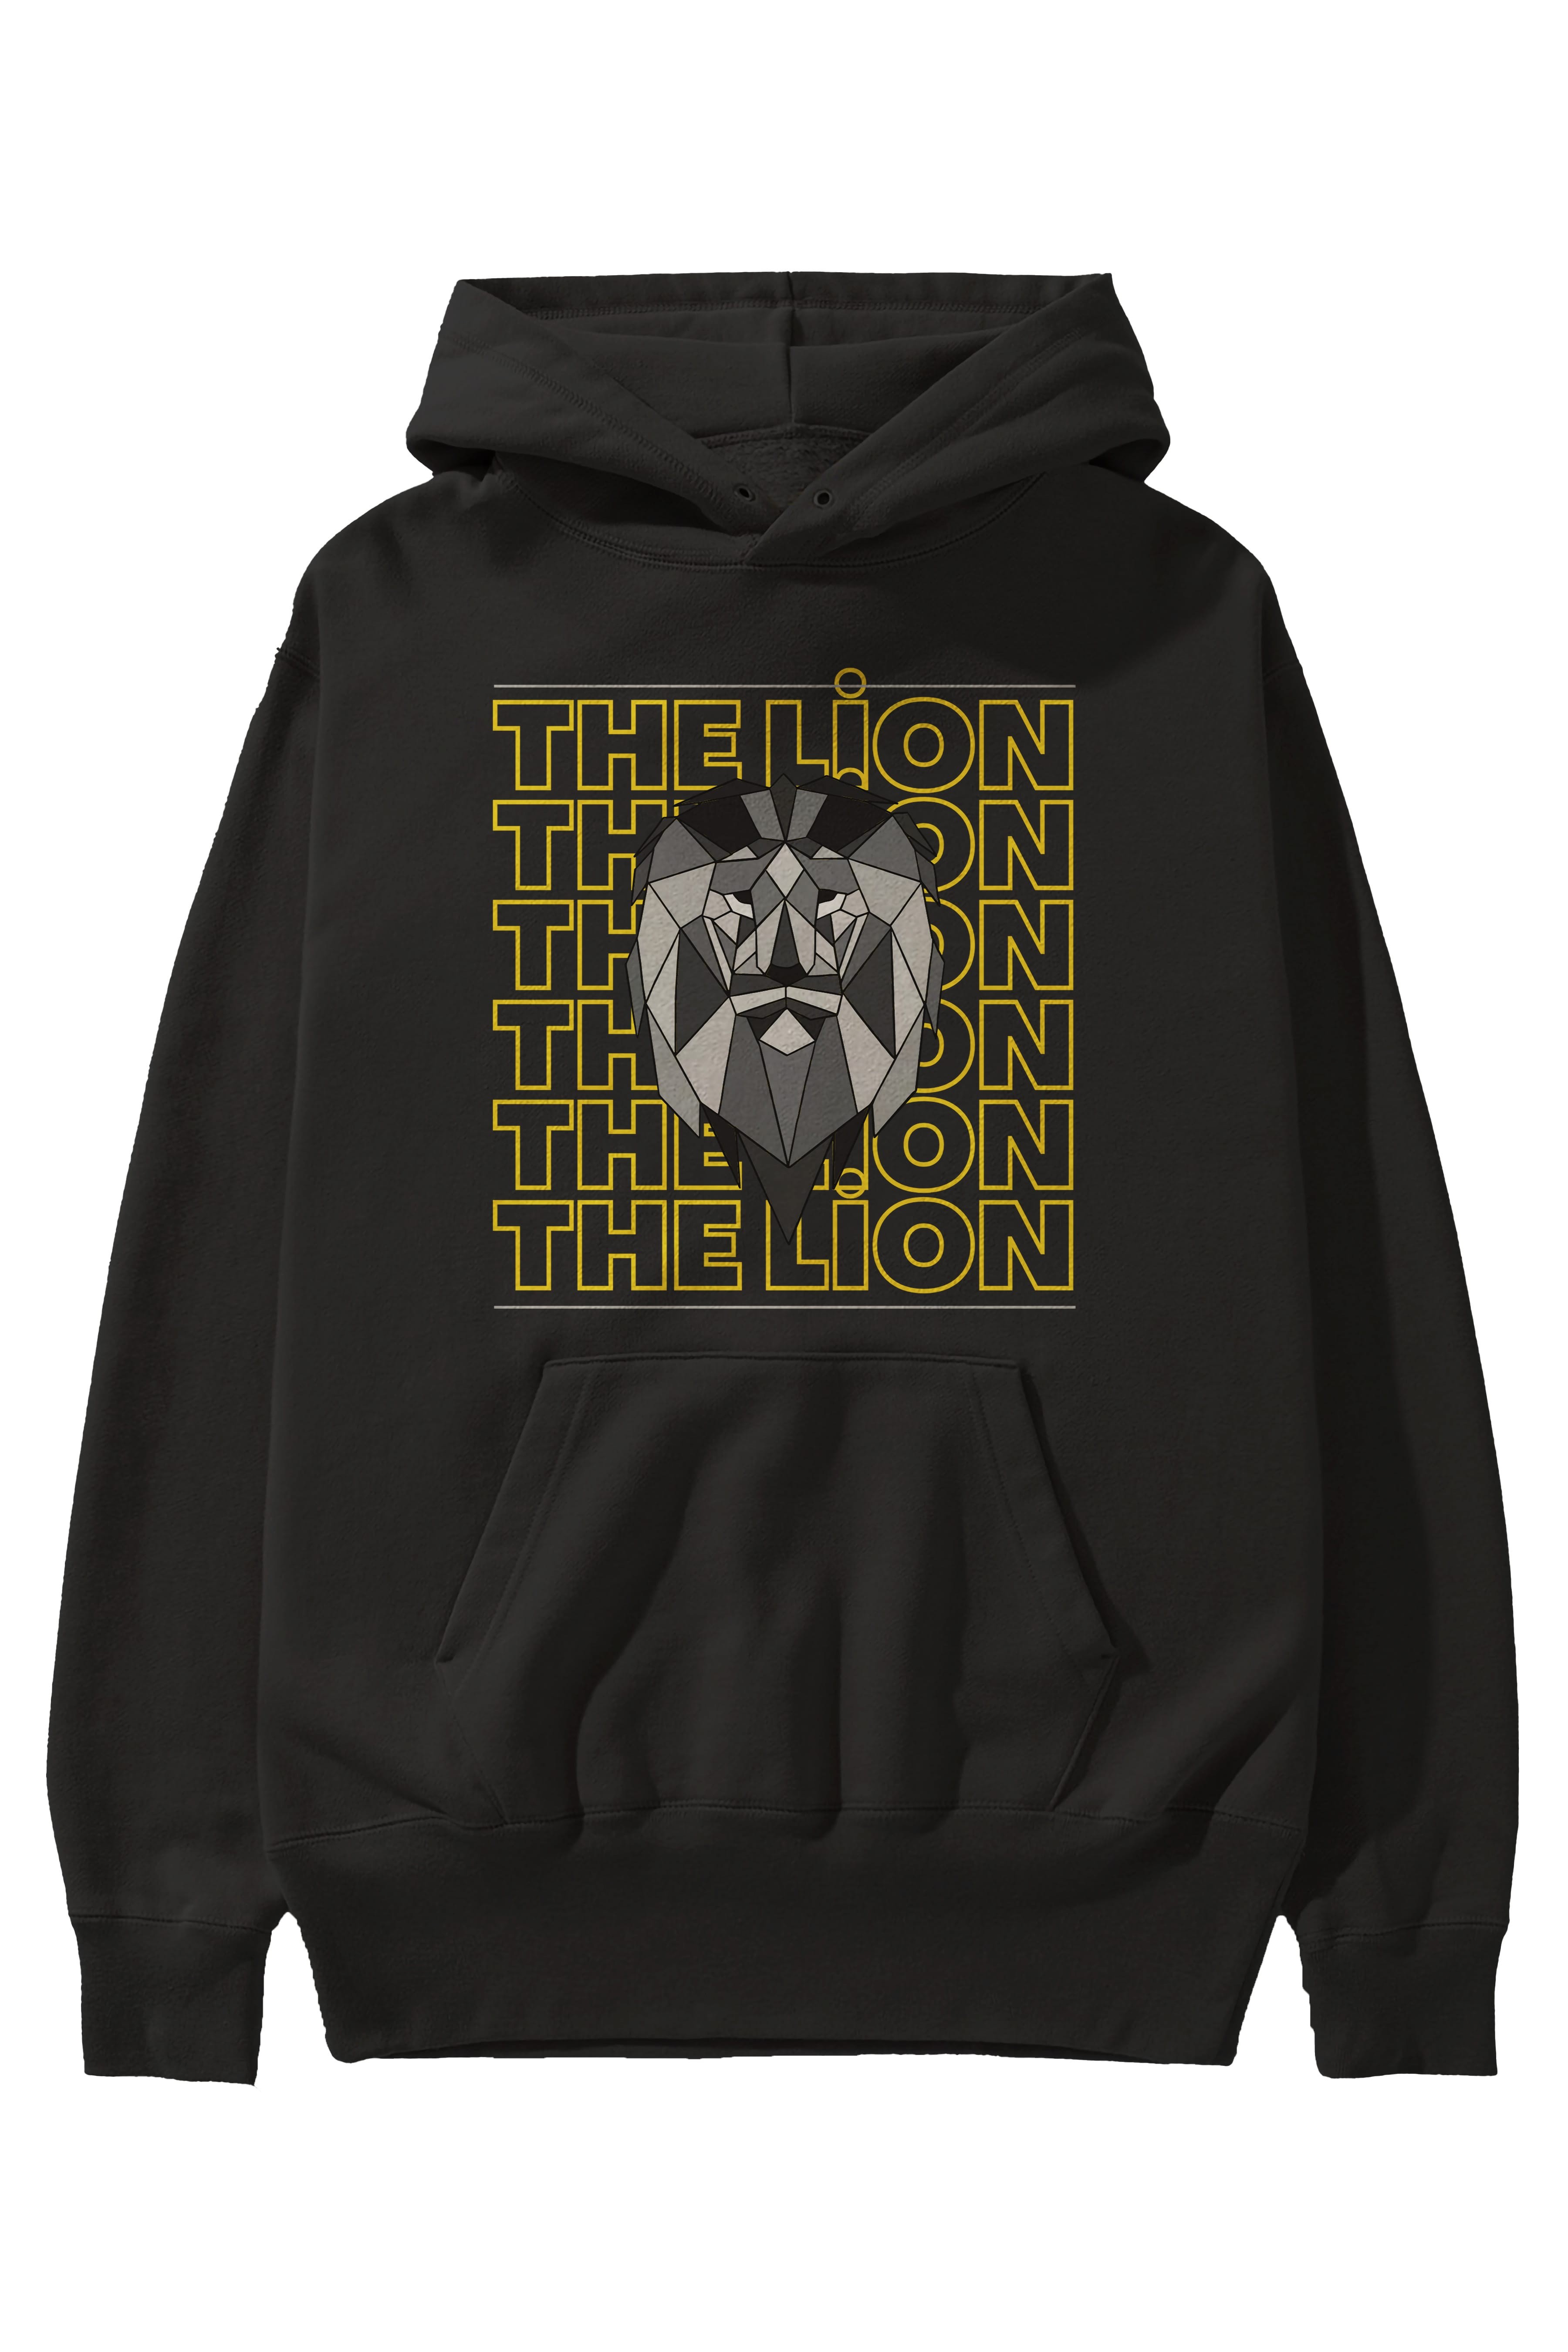 The Lion Yazılı Ön Baskılı Oversize Hoodie Kapüşonlu Sweatshirt Erkek Kadın Unisex